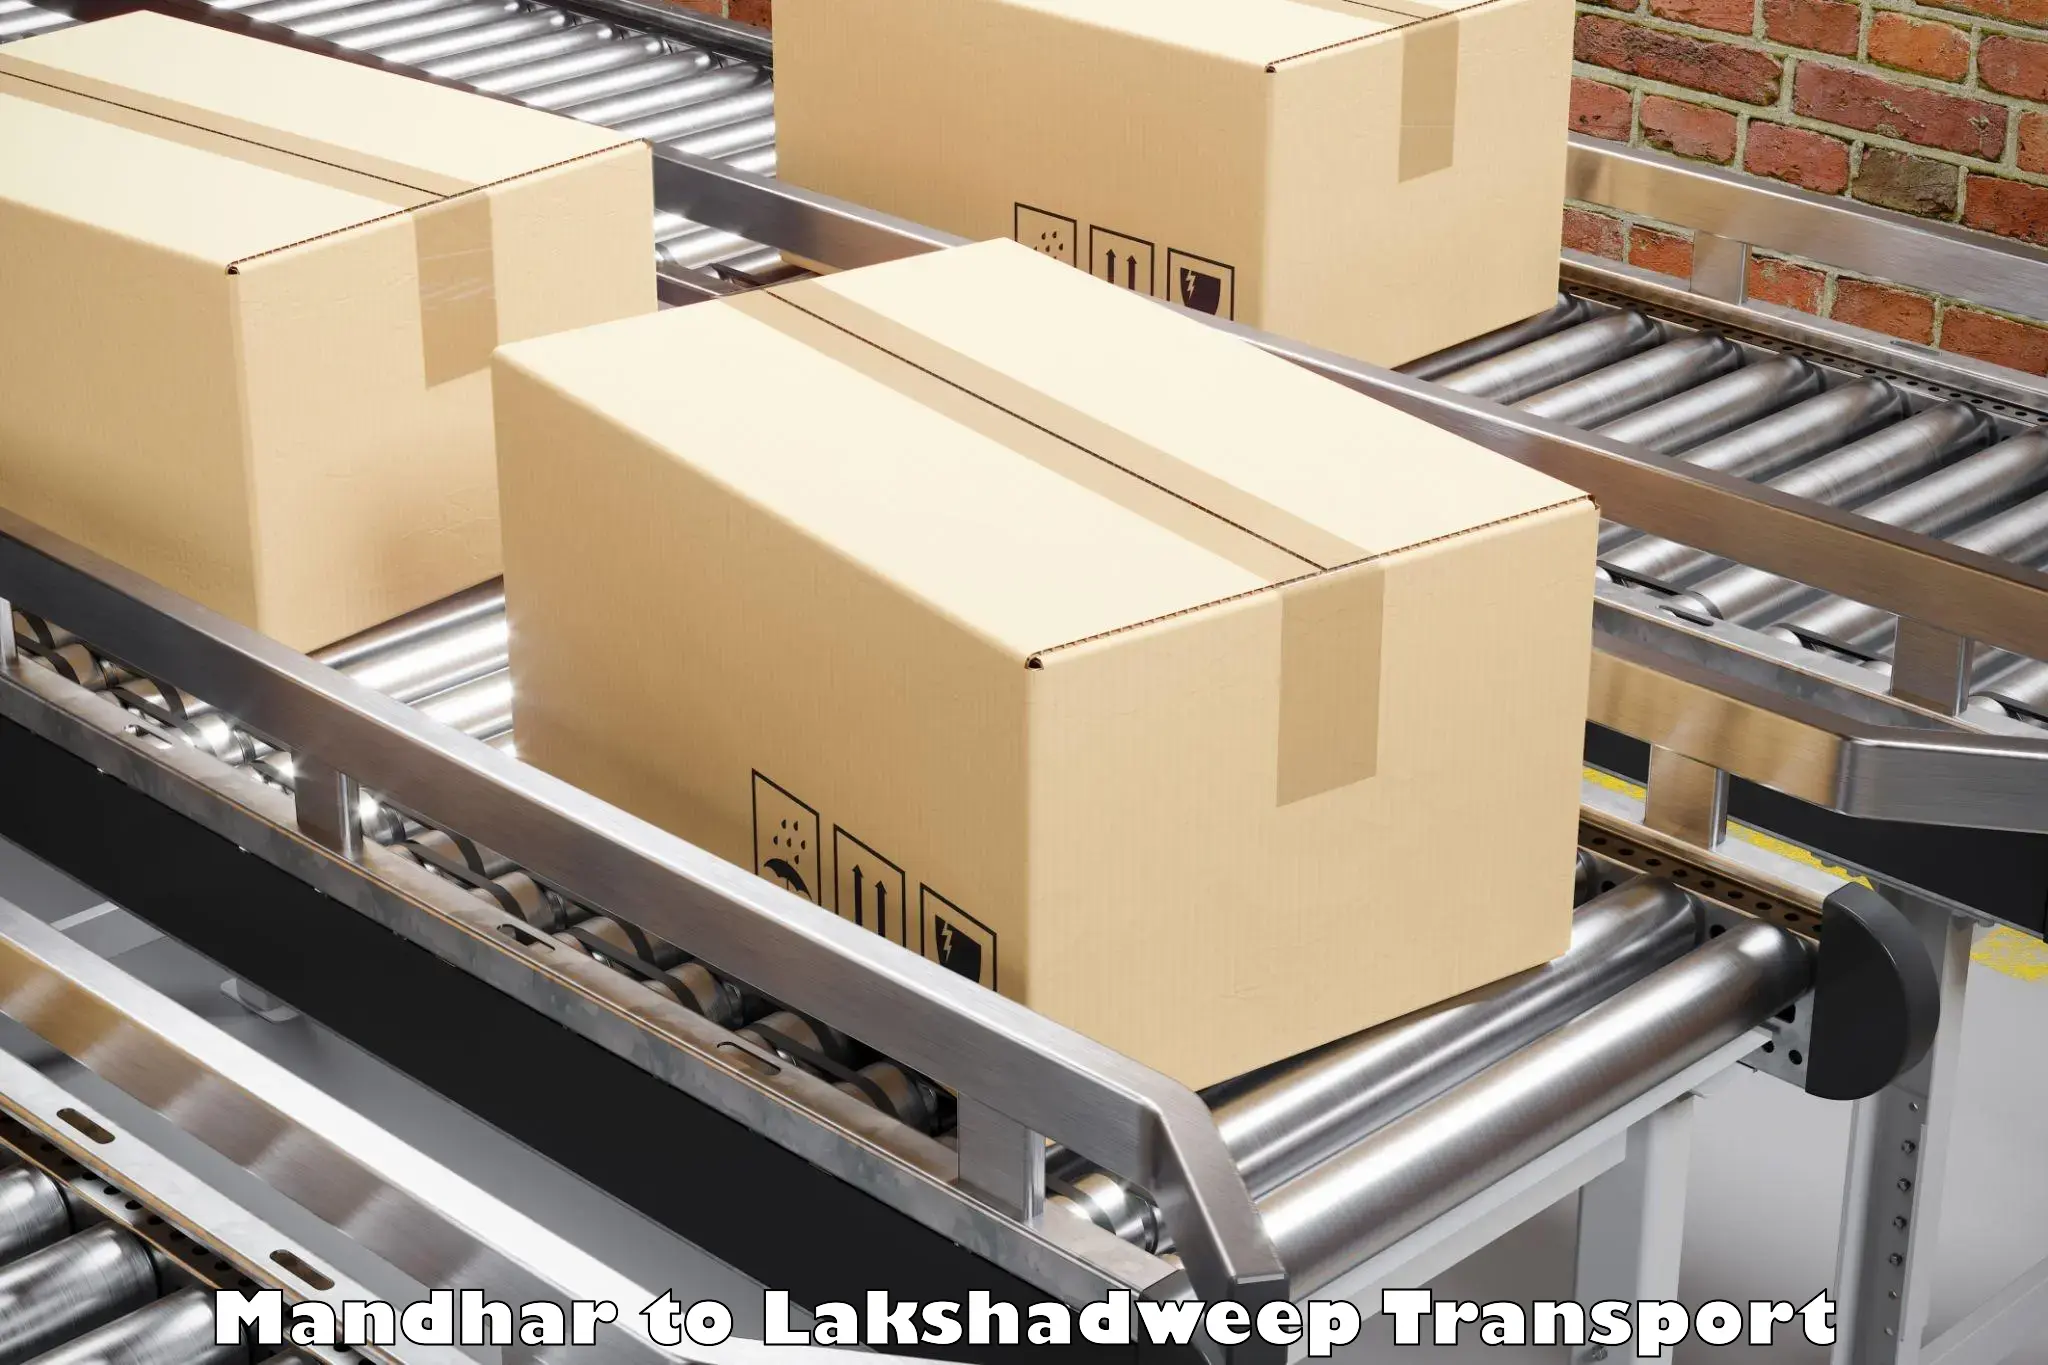 Pick up transport service Mandhar to Lakshadweep